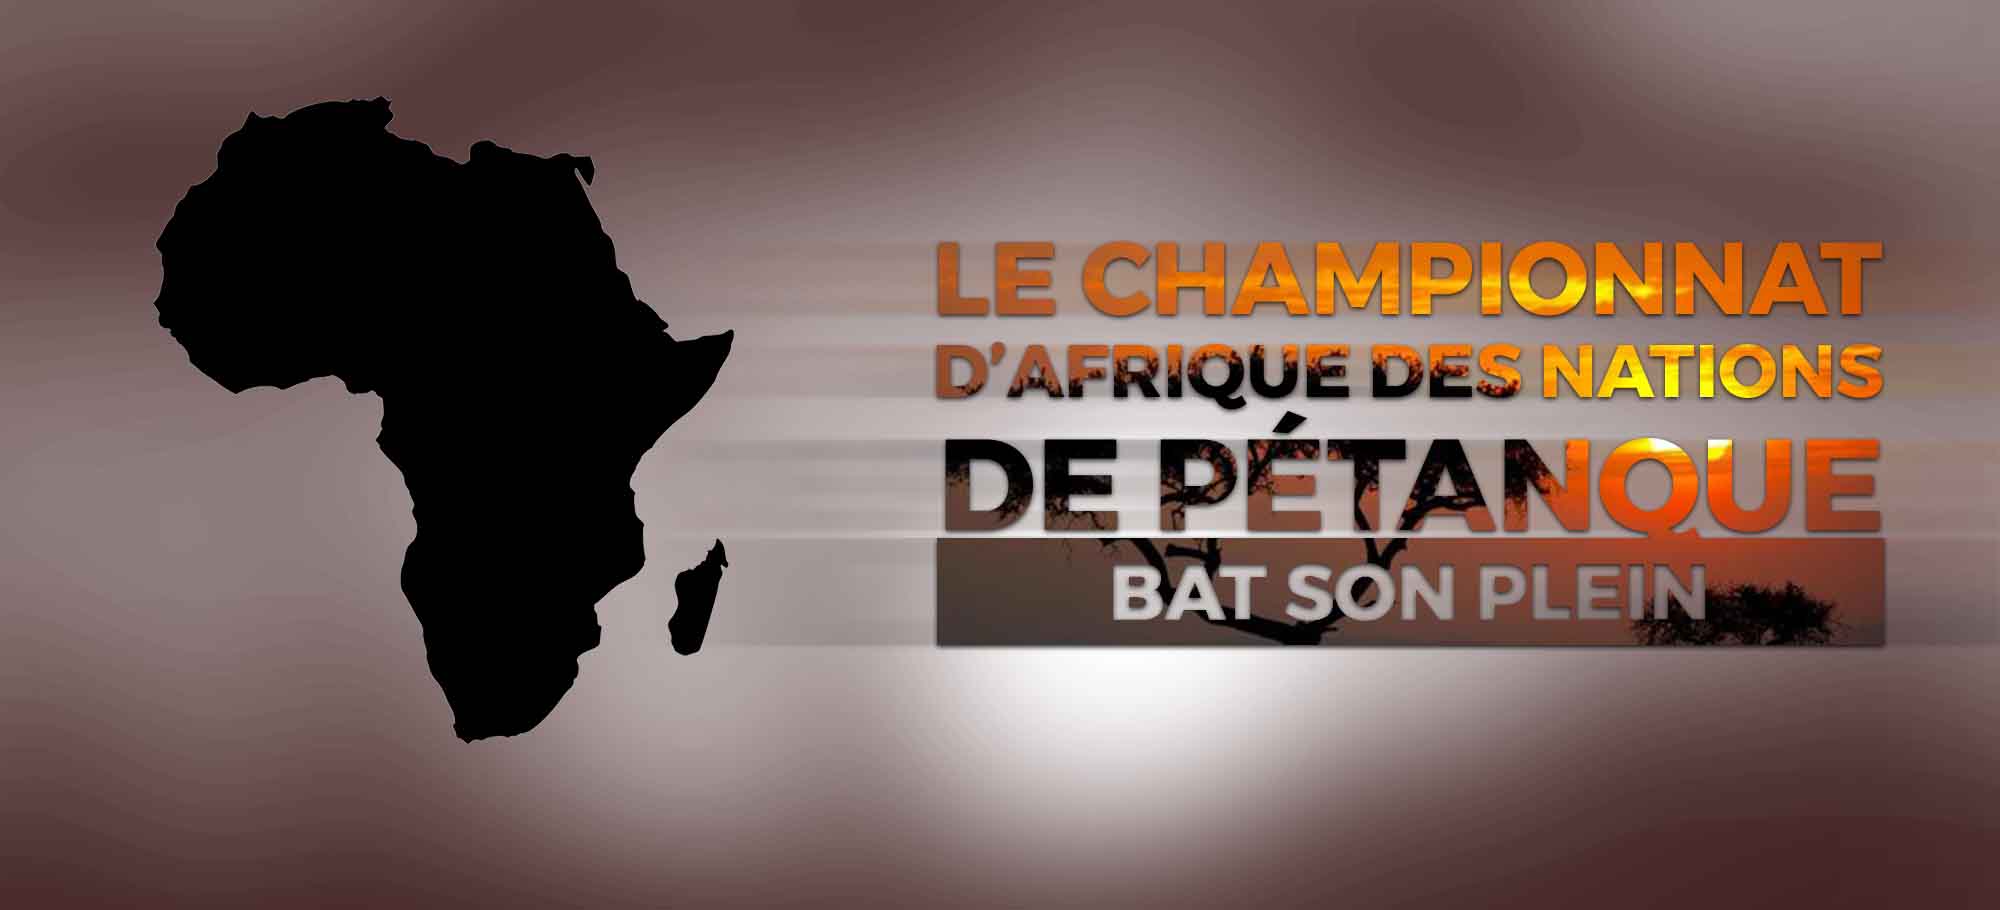 You are currently viewing Le championnat d’Afrique des Nations de pétanque bat son plein